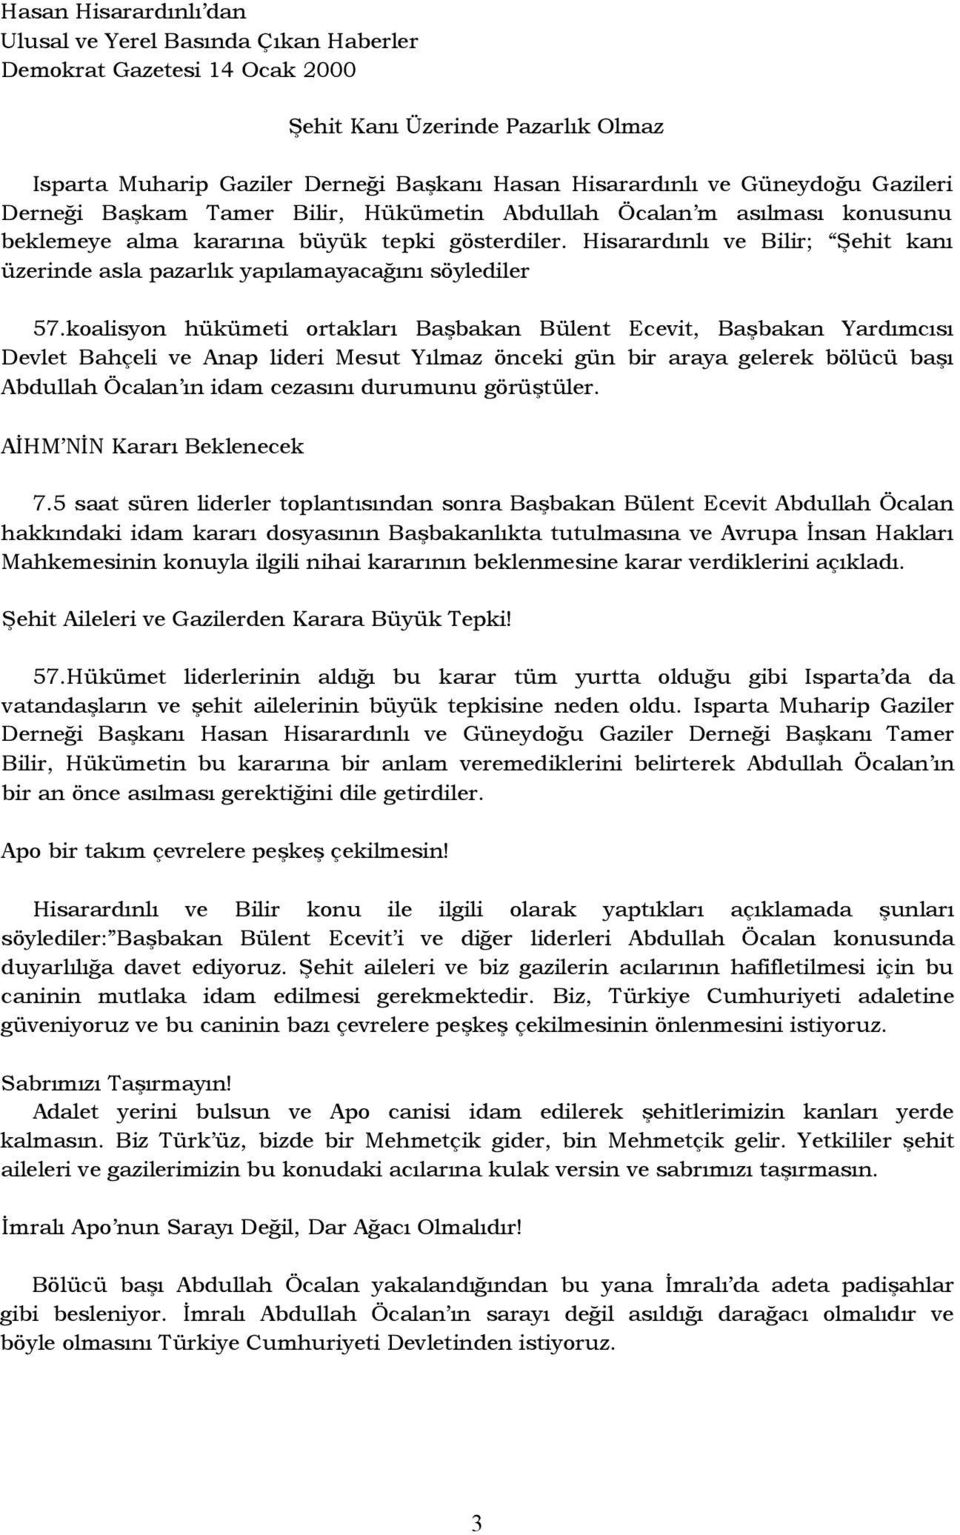 koalisyon hükümeti ortakları Başbakan Bülent Ecevit, Başbakan Yardımcısı Devlet Bahçeli ve Anap lideri Mesut Yılmaz önceki gün bir araya gelerek bölücü başı Abdullah Öcalan ın idam cezasını durumunu